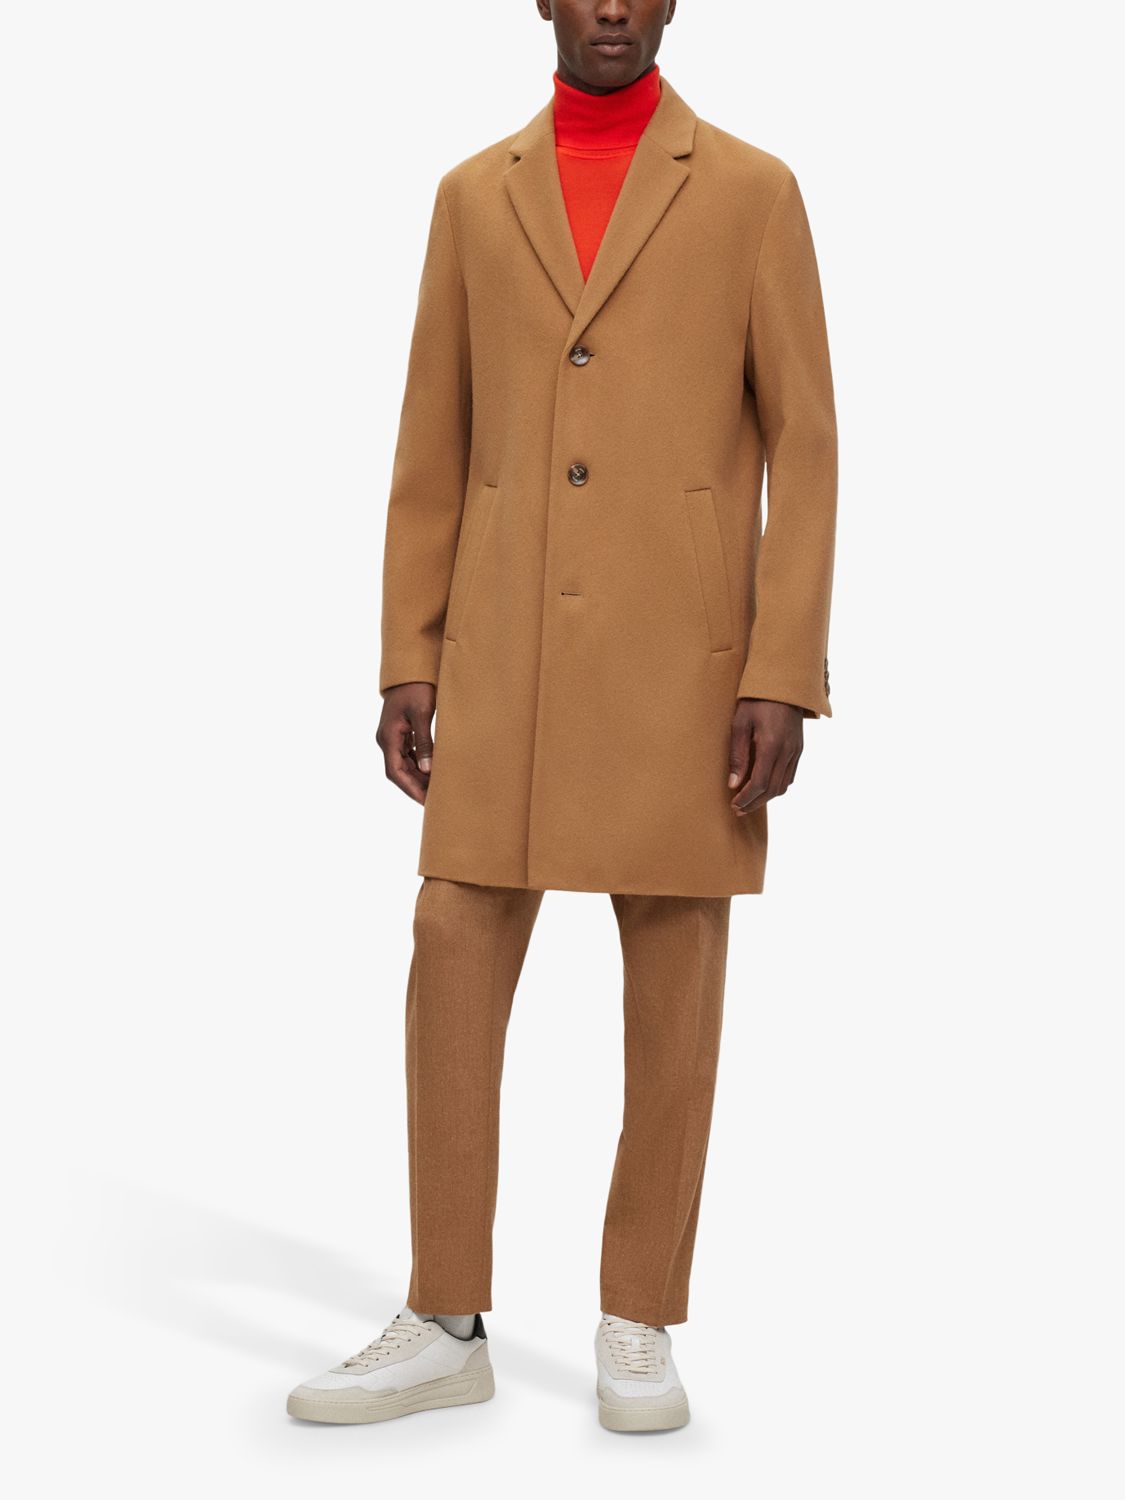 HUGO Hyde Recycled Wool Blend Overcoat, Medium Beige, 42R